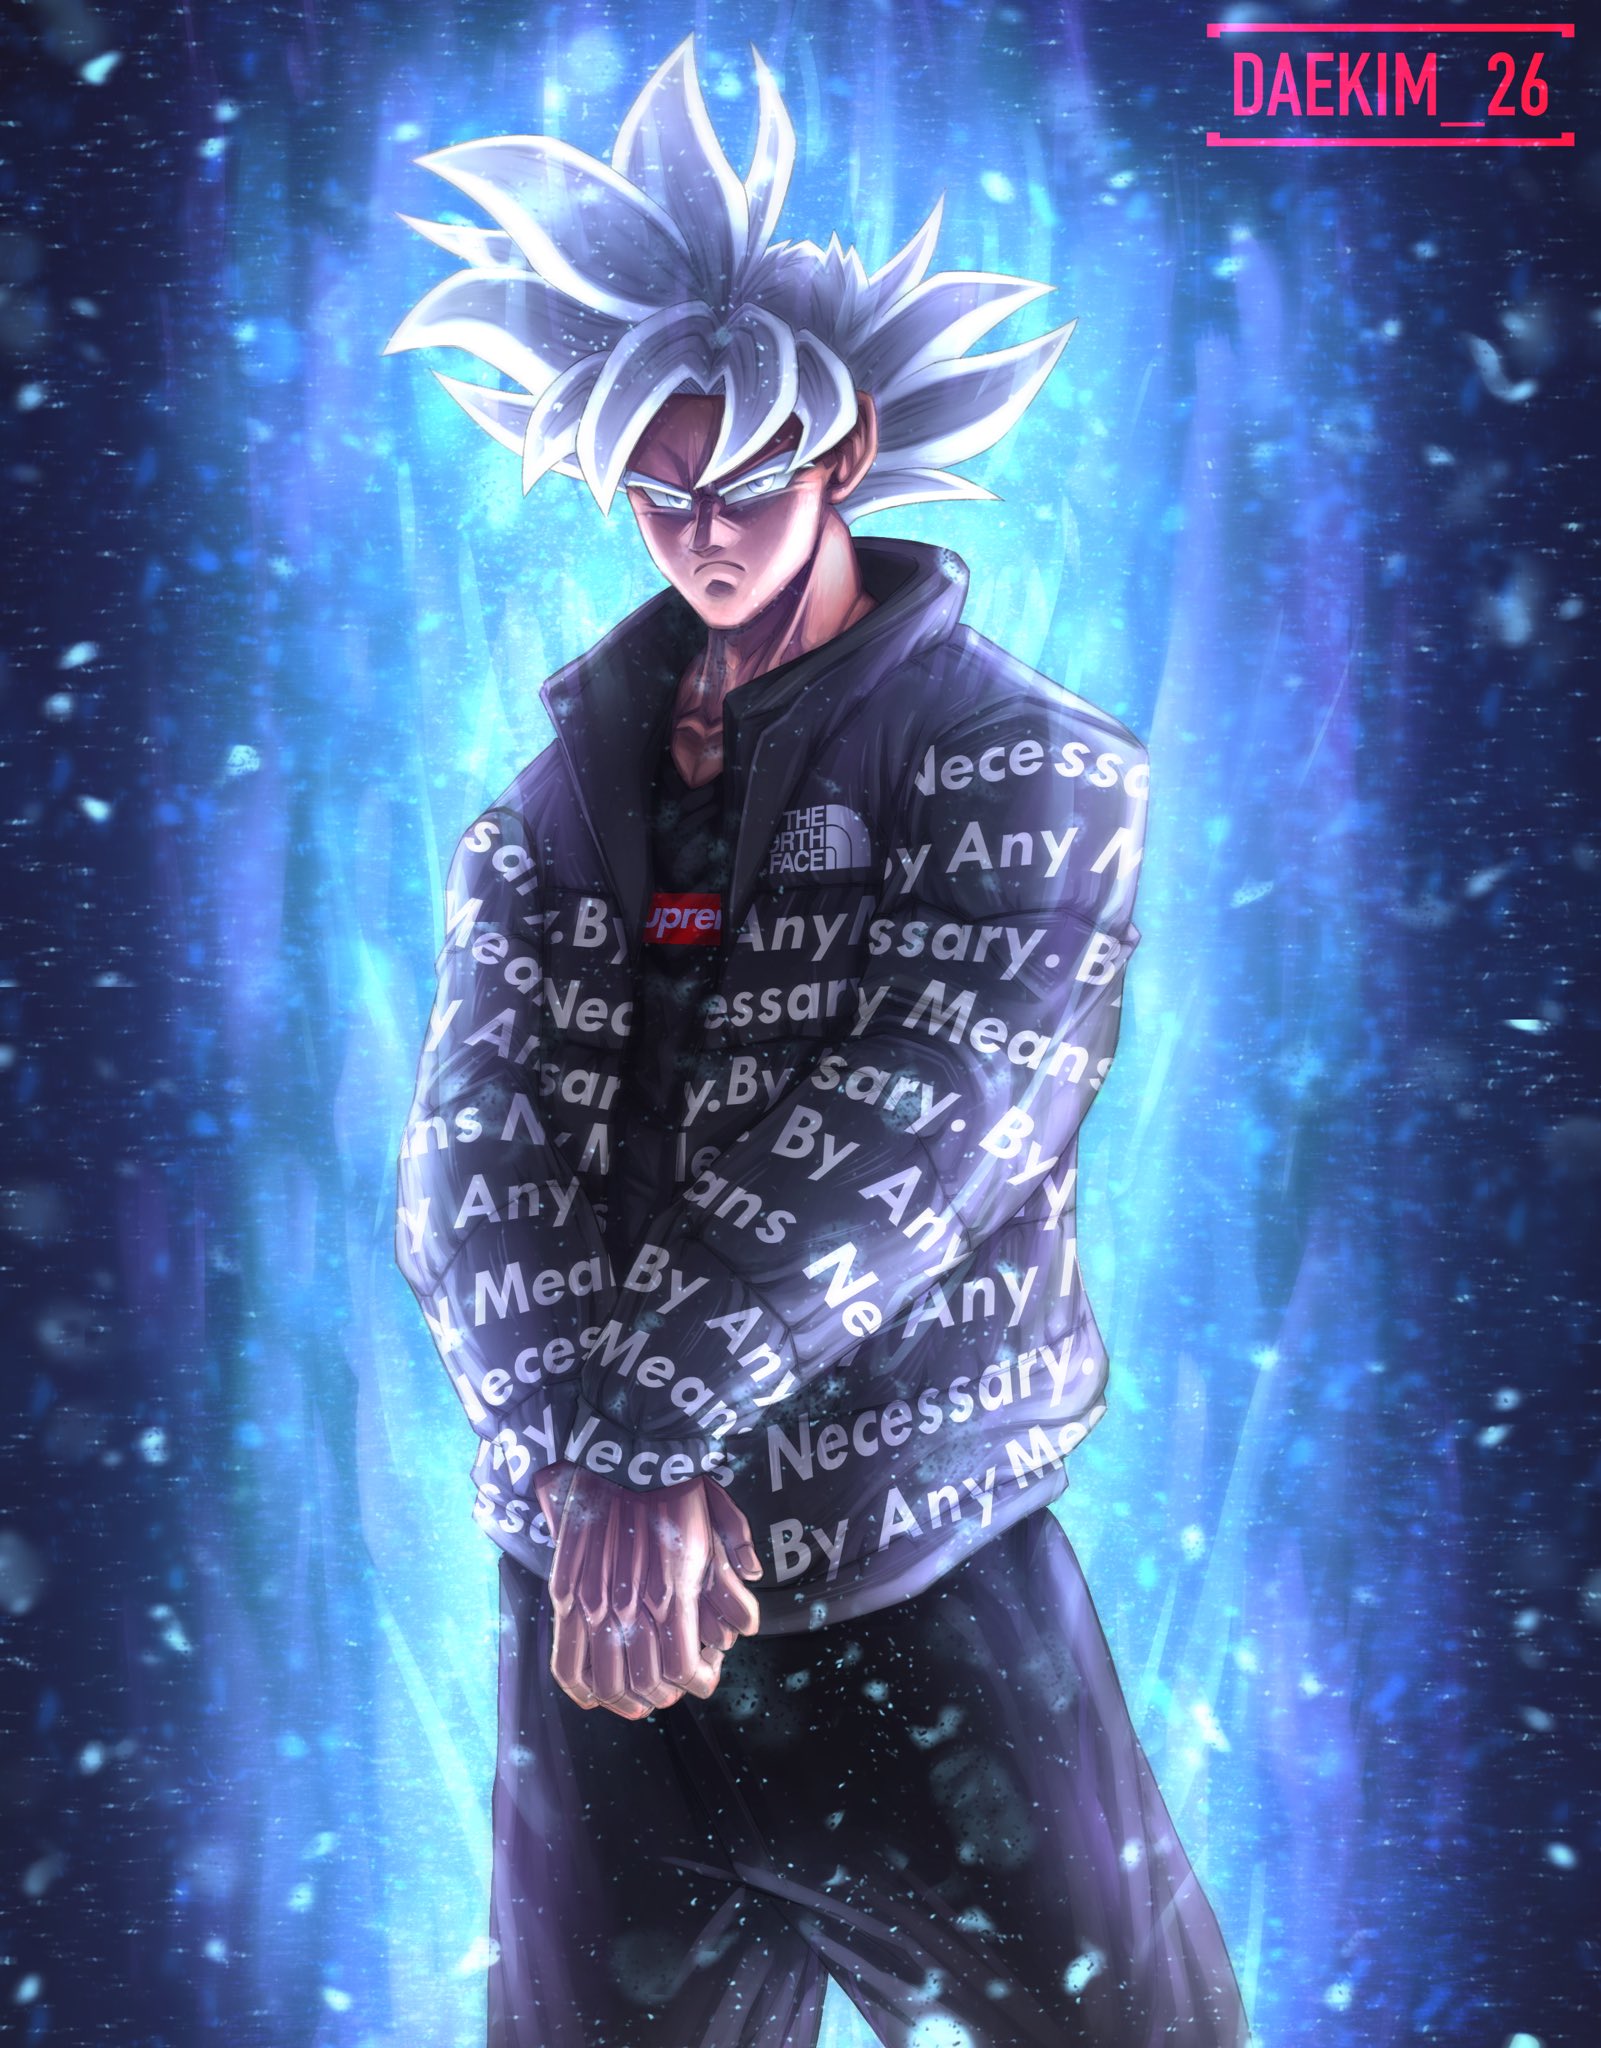 Goku black with drip wallpaper by NEEEEEEERD444 - Download on